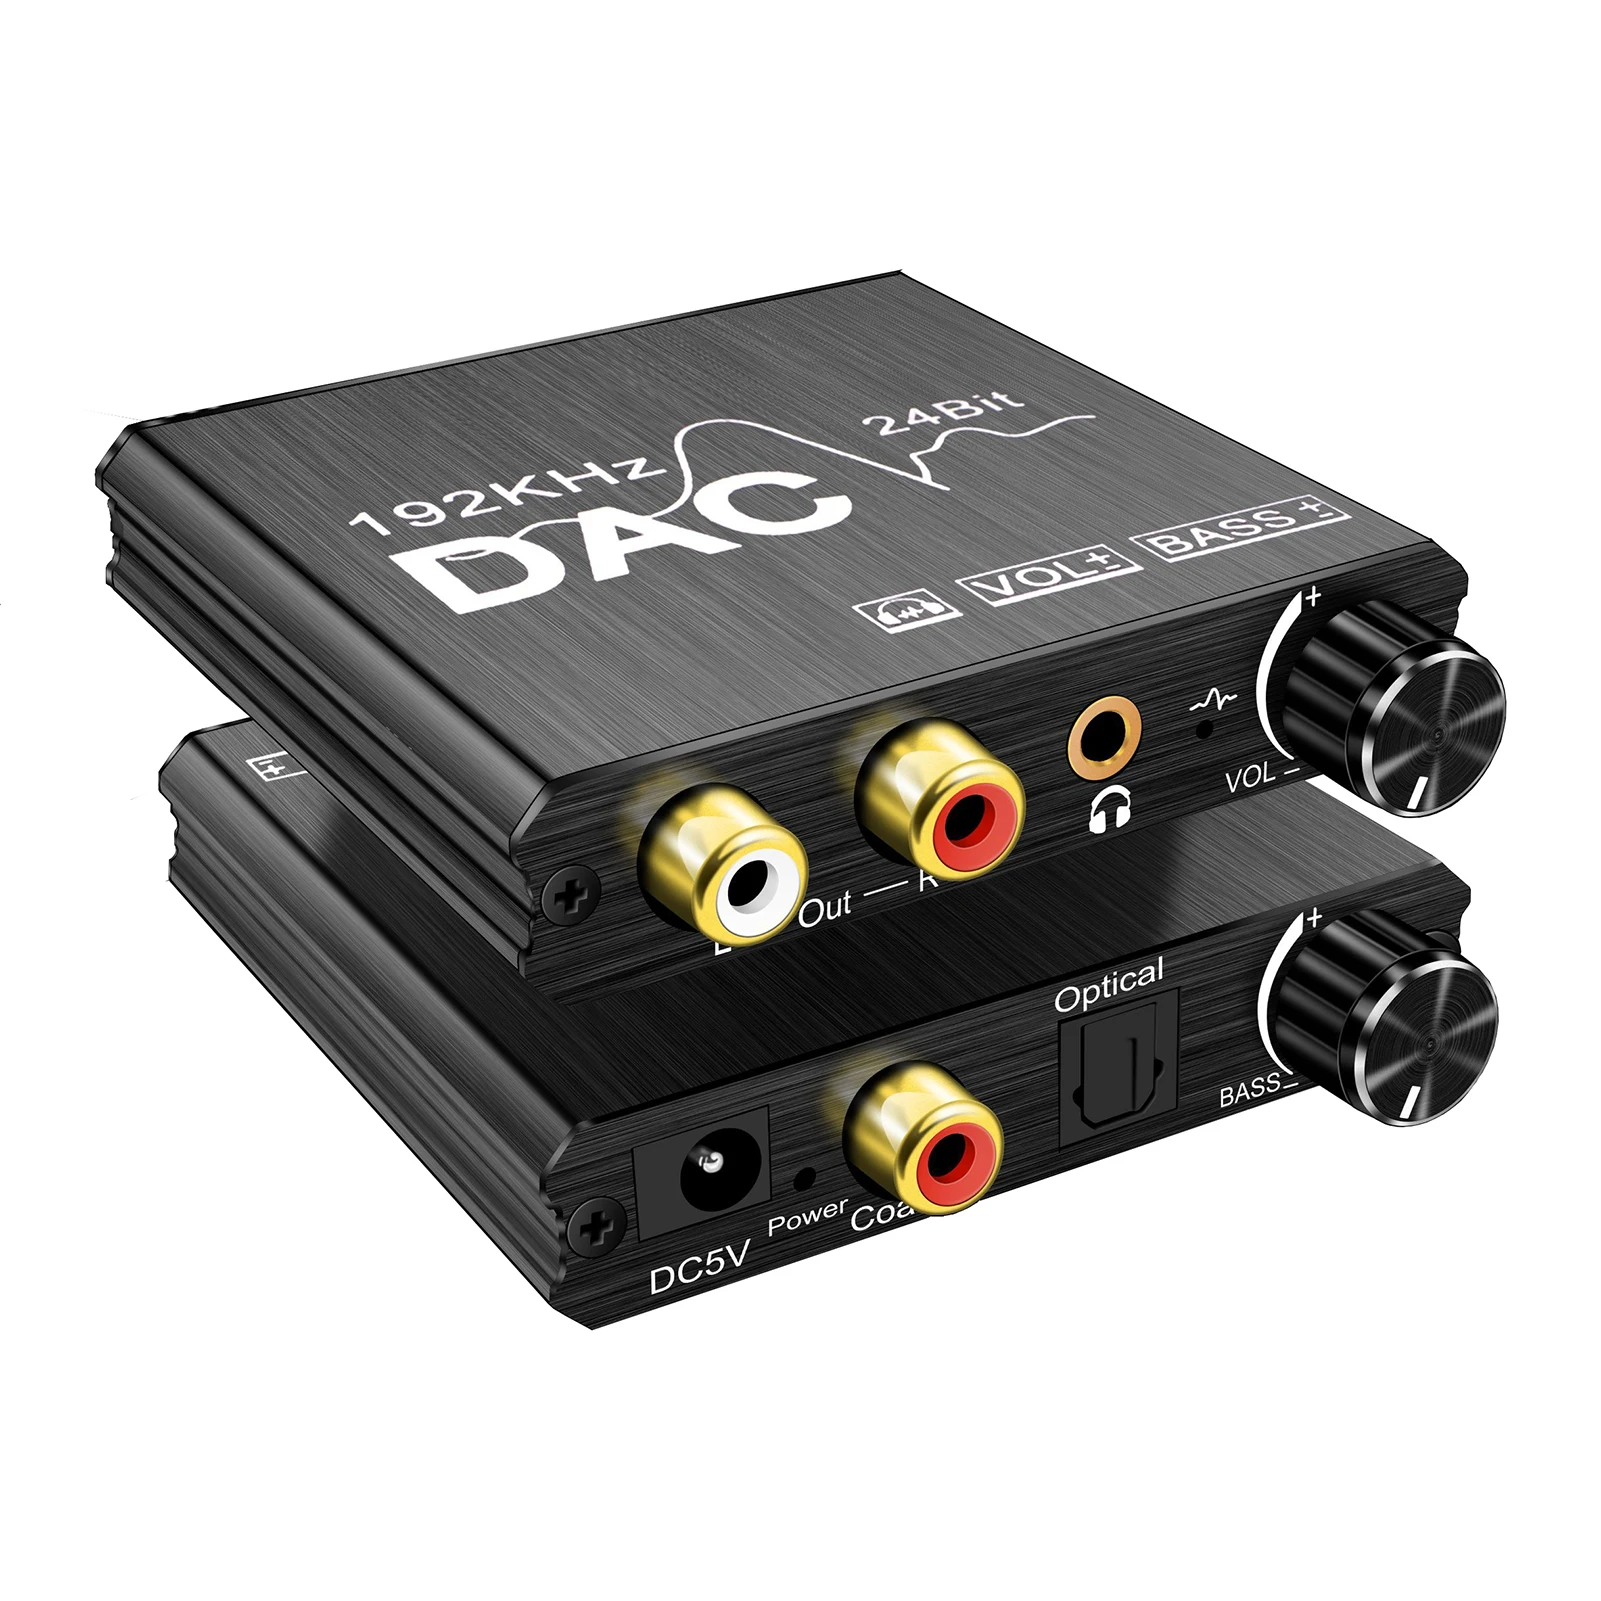 

Преобразователь DAC 192 кГц, Цифровой оптический коаксиальный Toslink в аналоговый L/R RCA разъем 3,5 мм, аудиоконвертер, адаптер с регулировкой громк...